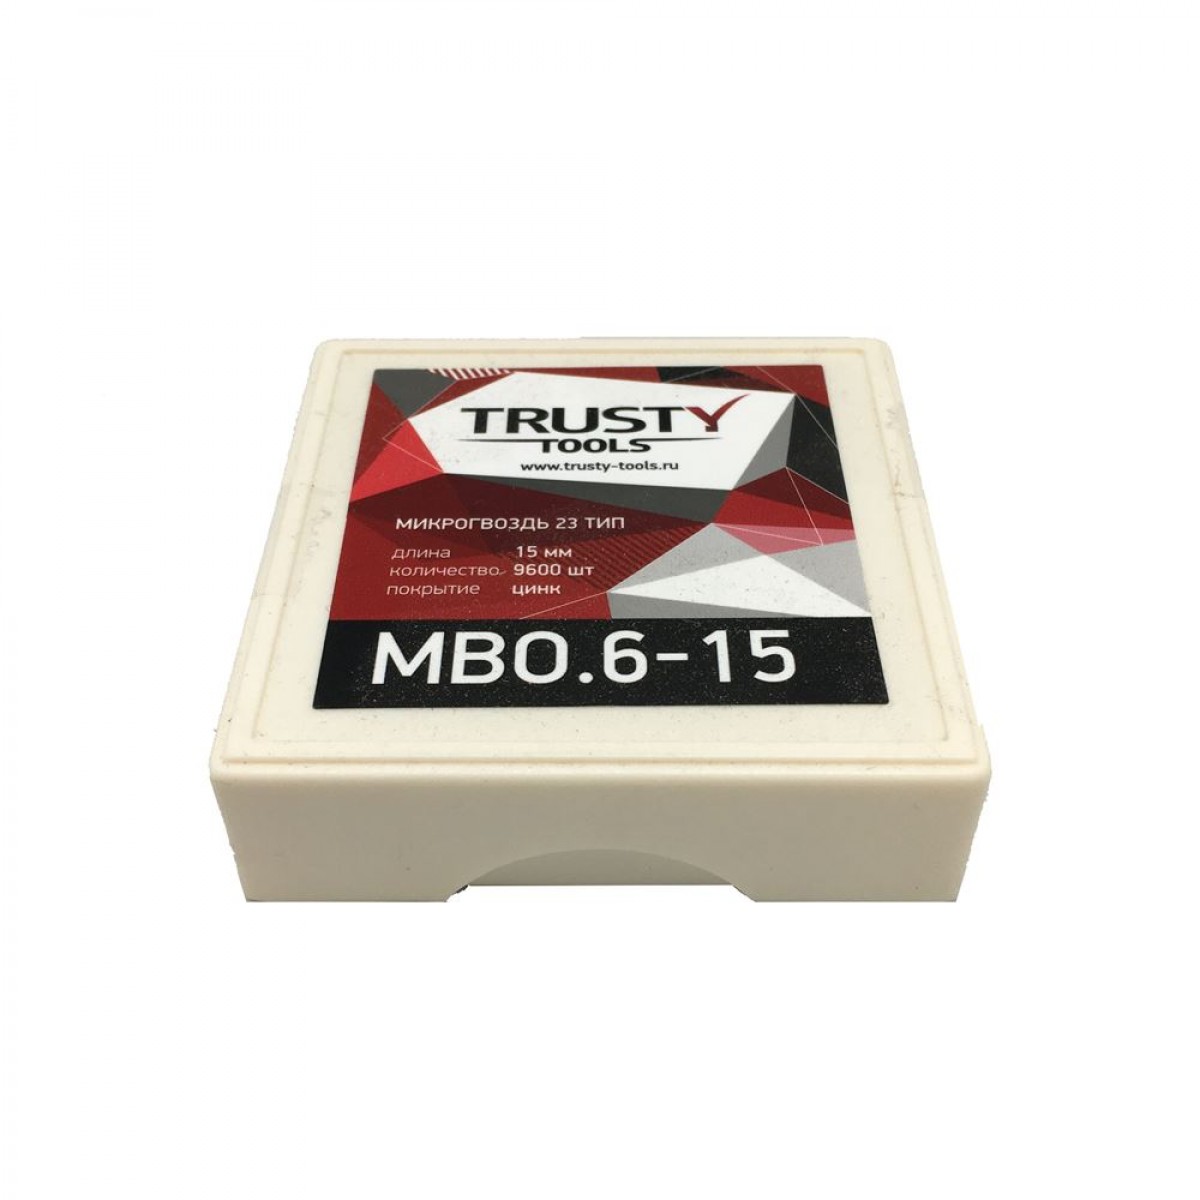 Микрогвоздь Trusty 15 мм MBO.6-15 тип 23, 23 ga, MB (9600 шт)